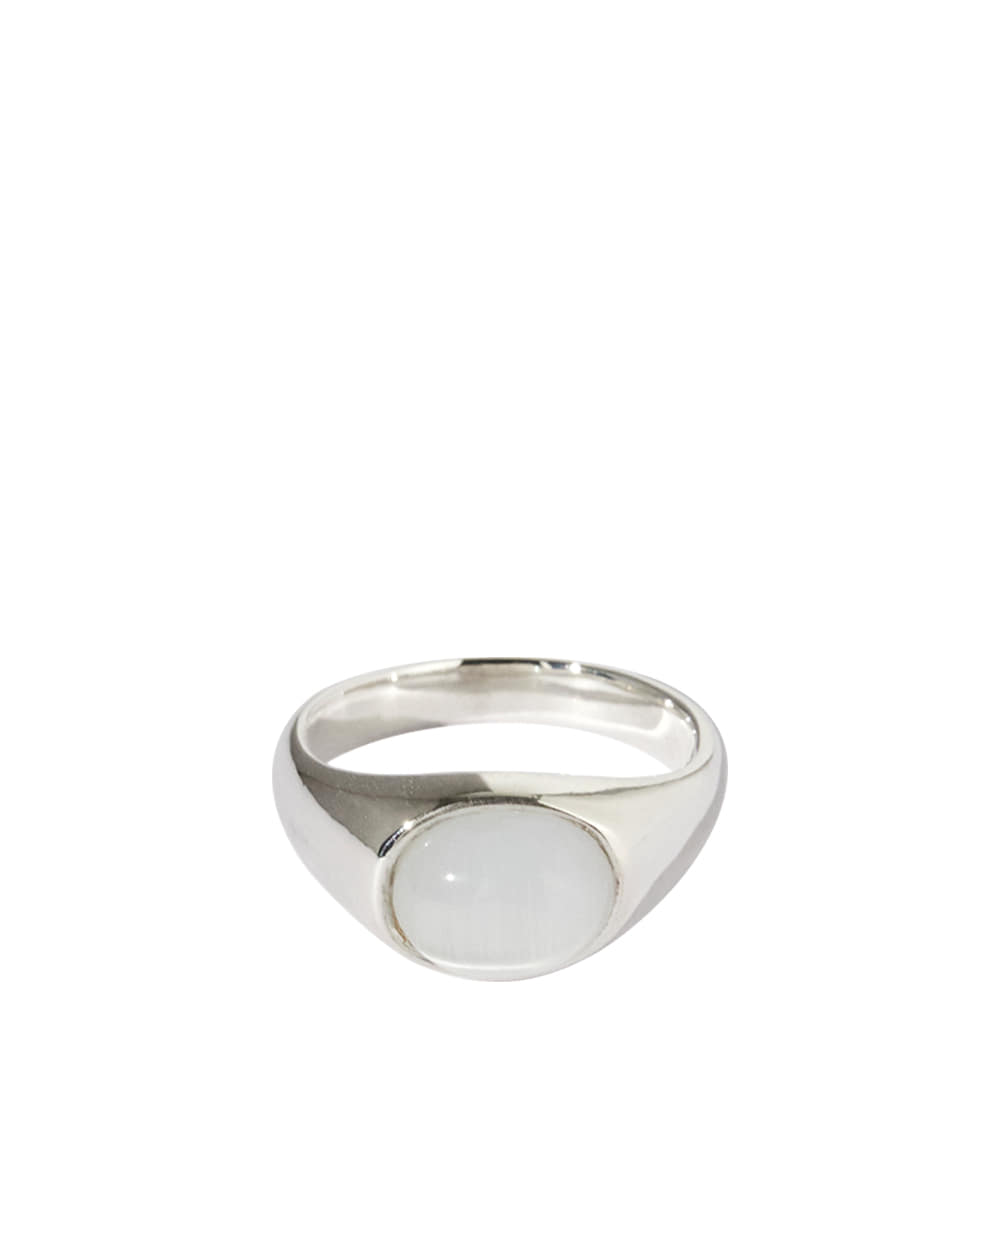 Noel gemstone ring / Silver